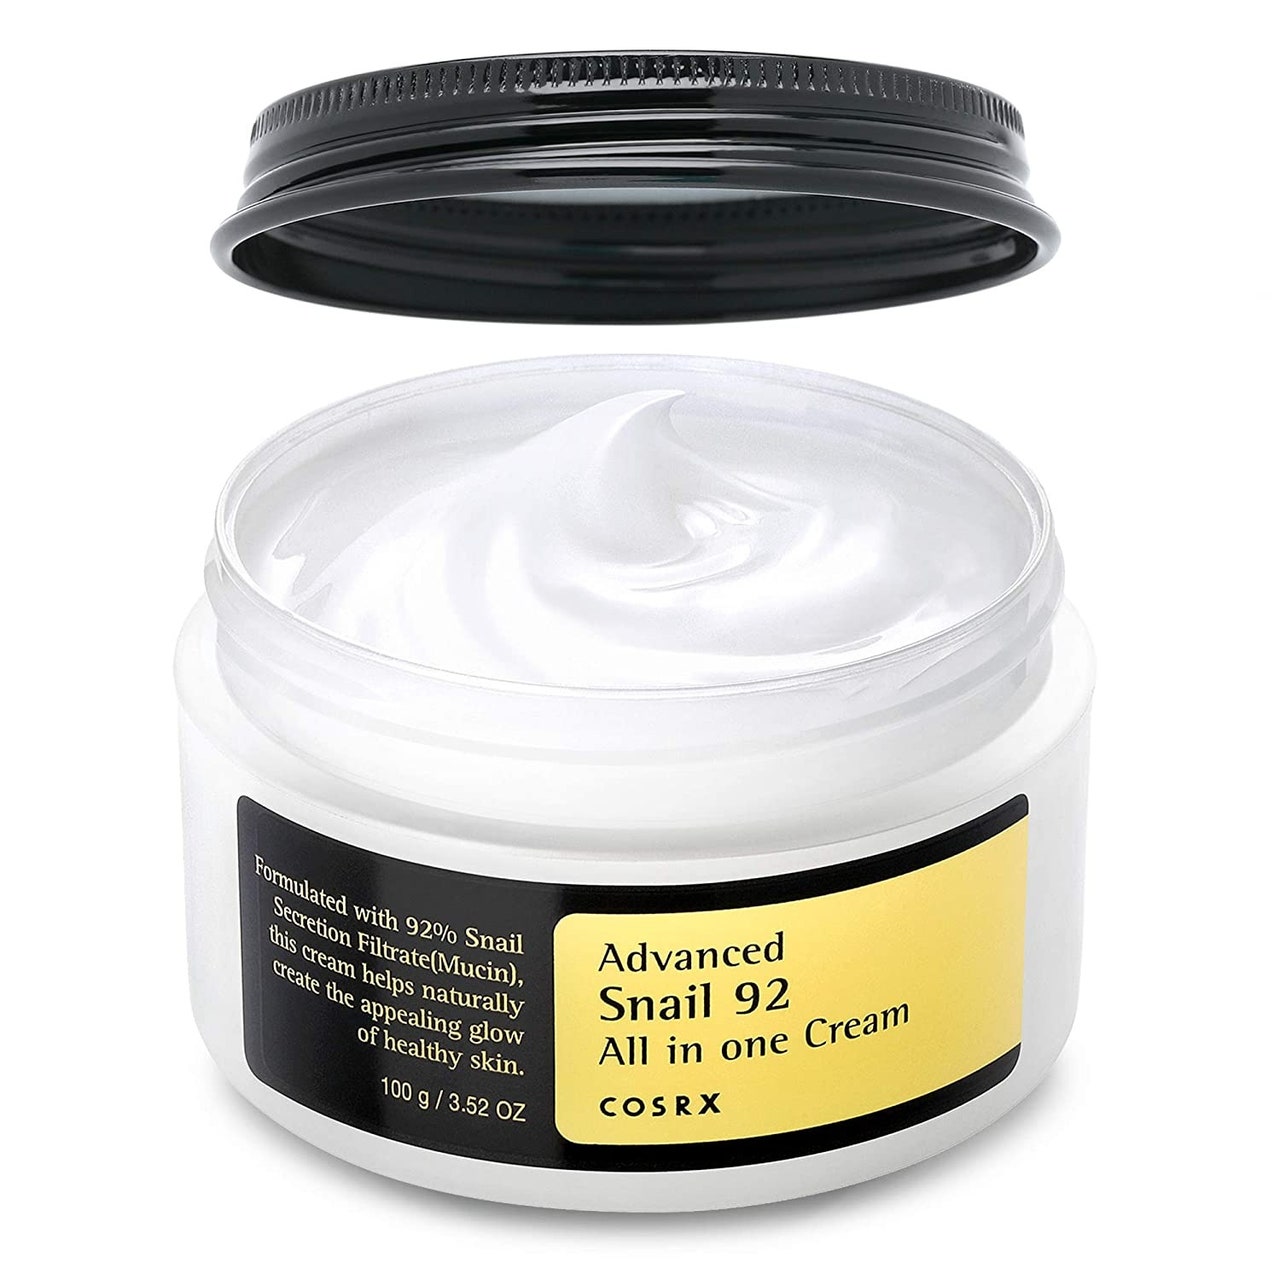 Eine offene Wanne Cosrx Advanced Snail 92 All in One Cream auf weißem Hintergrund